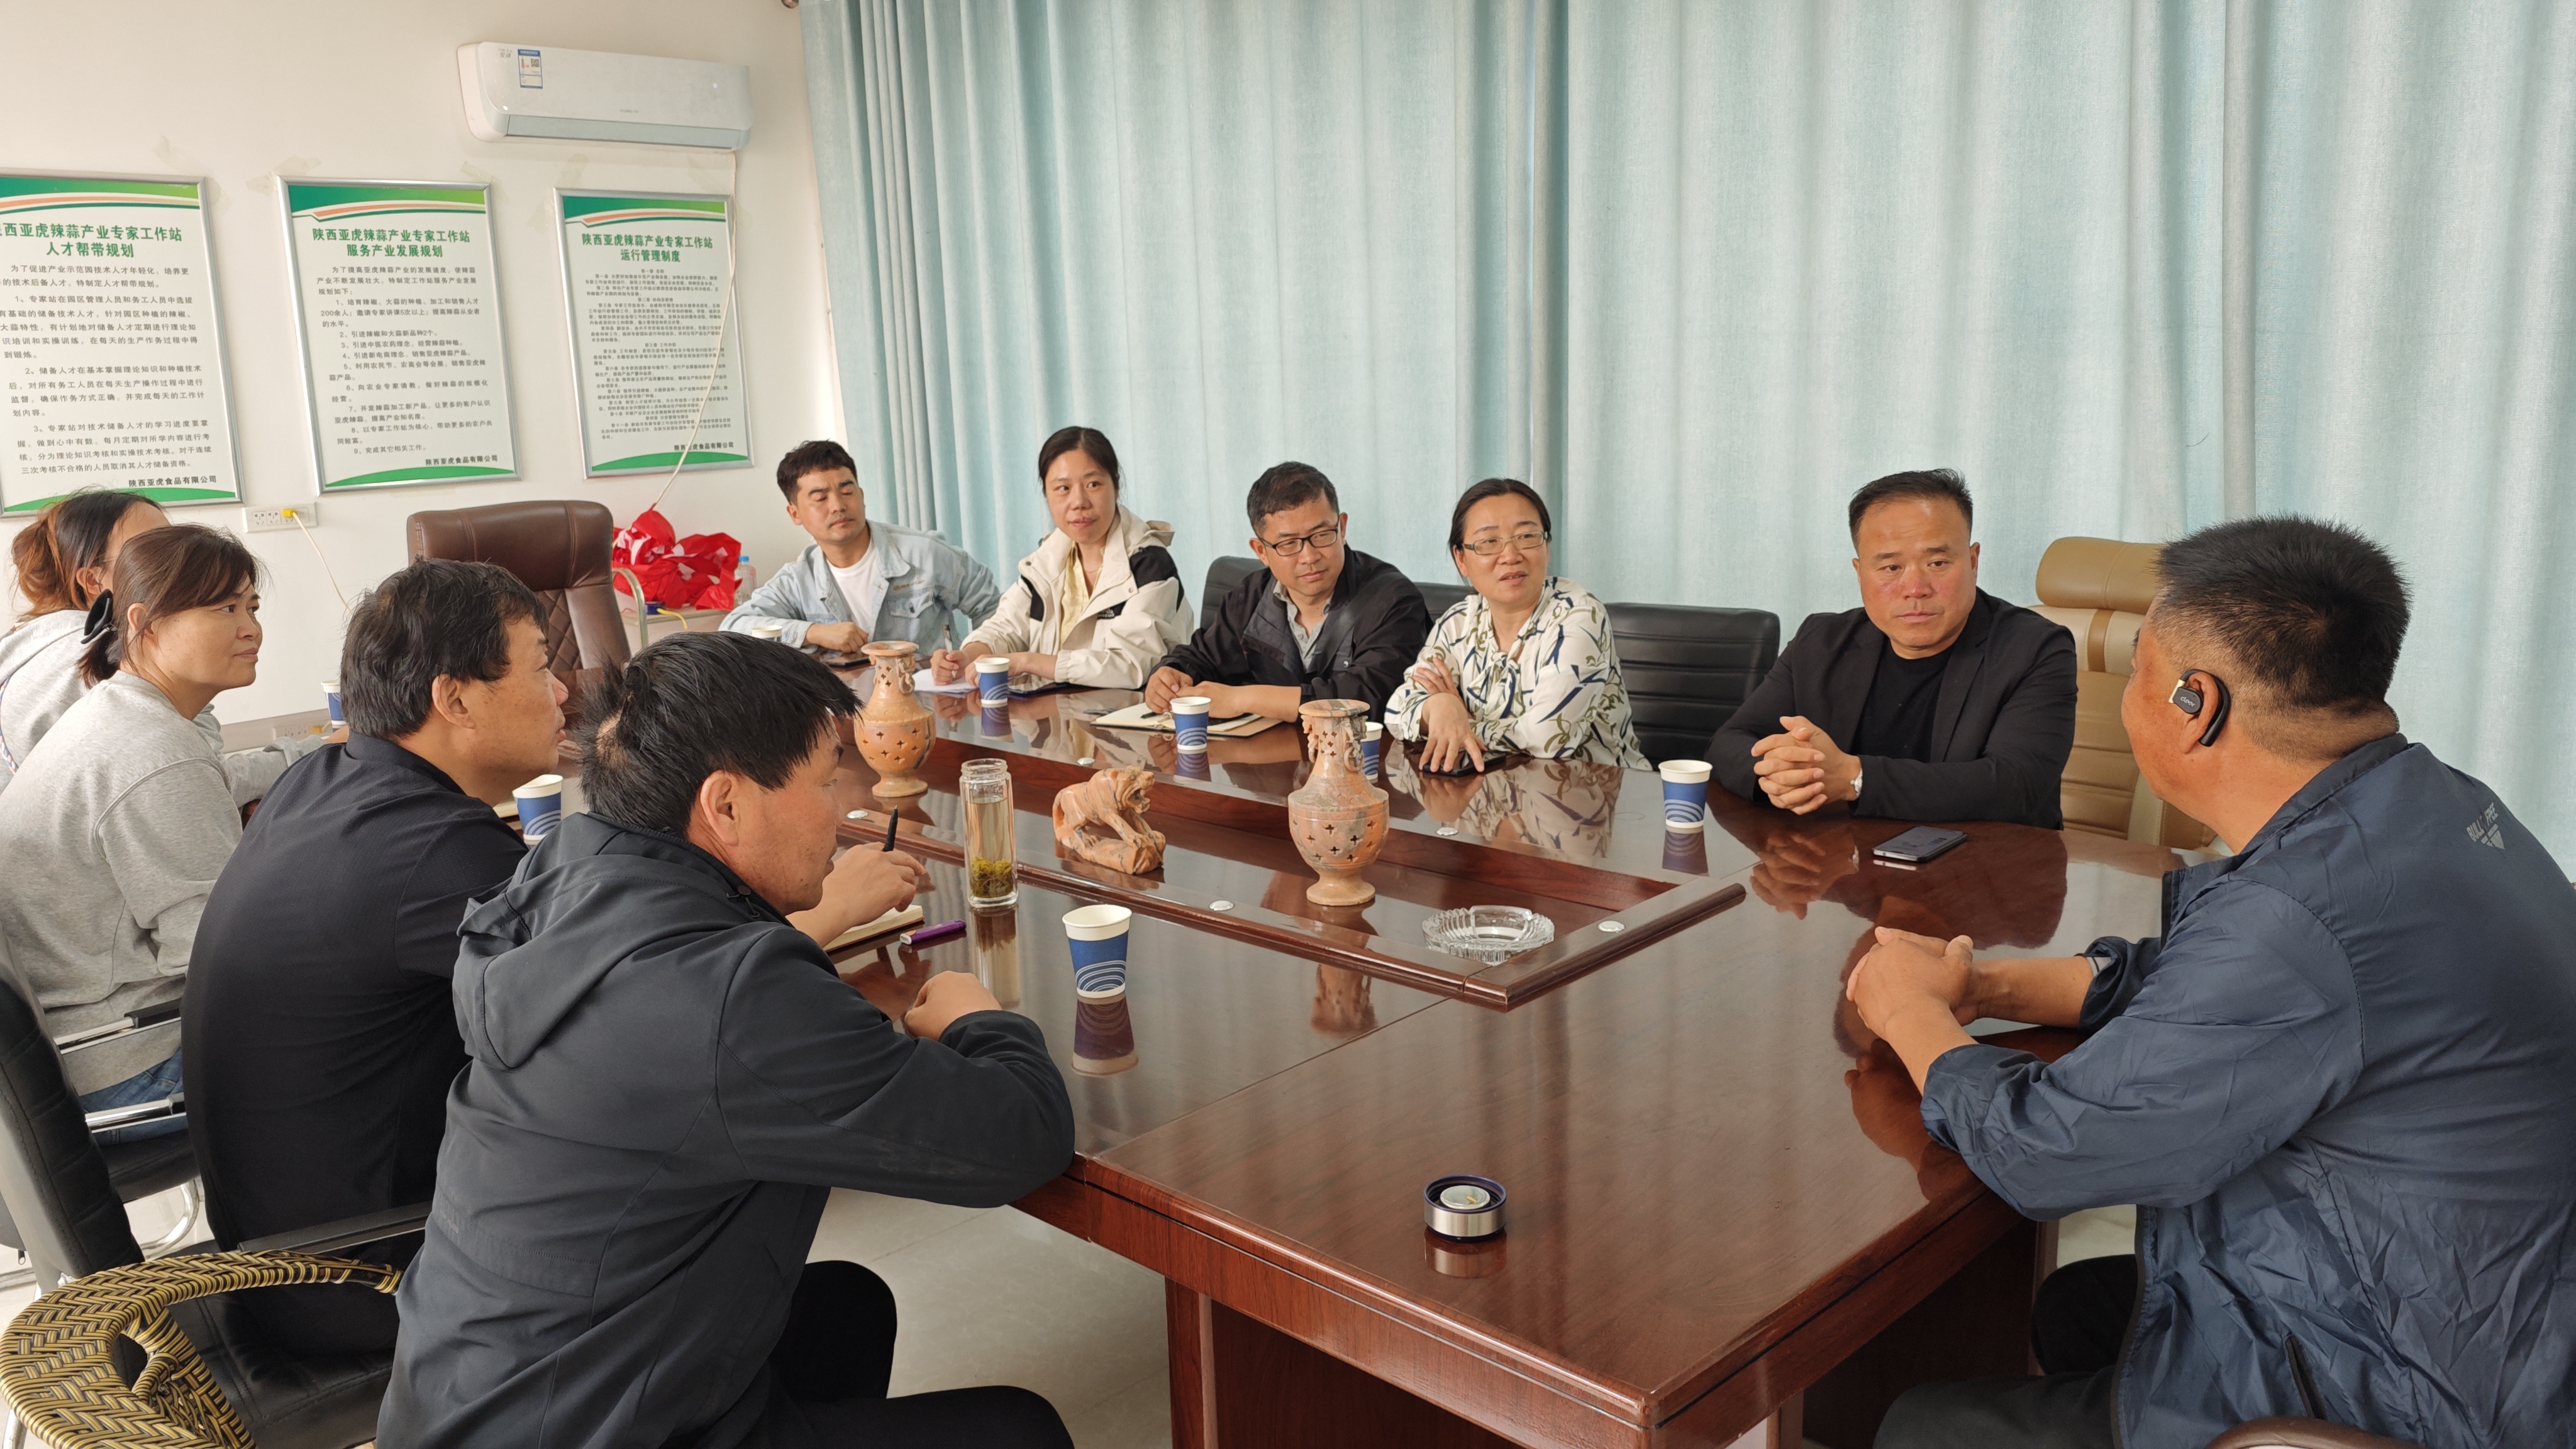 调研团队在陕西亚虎食品有限公司进行座谈.jpg